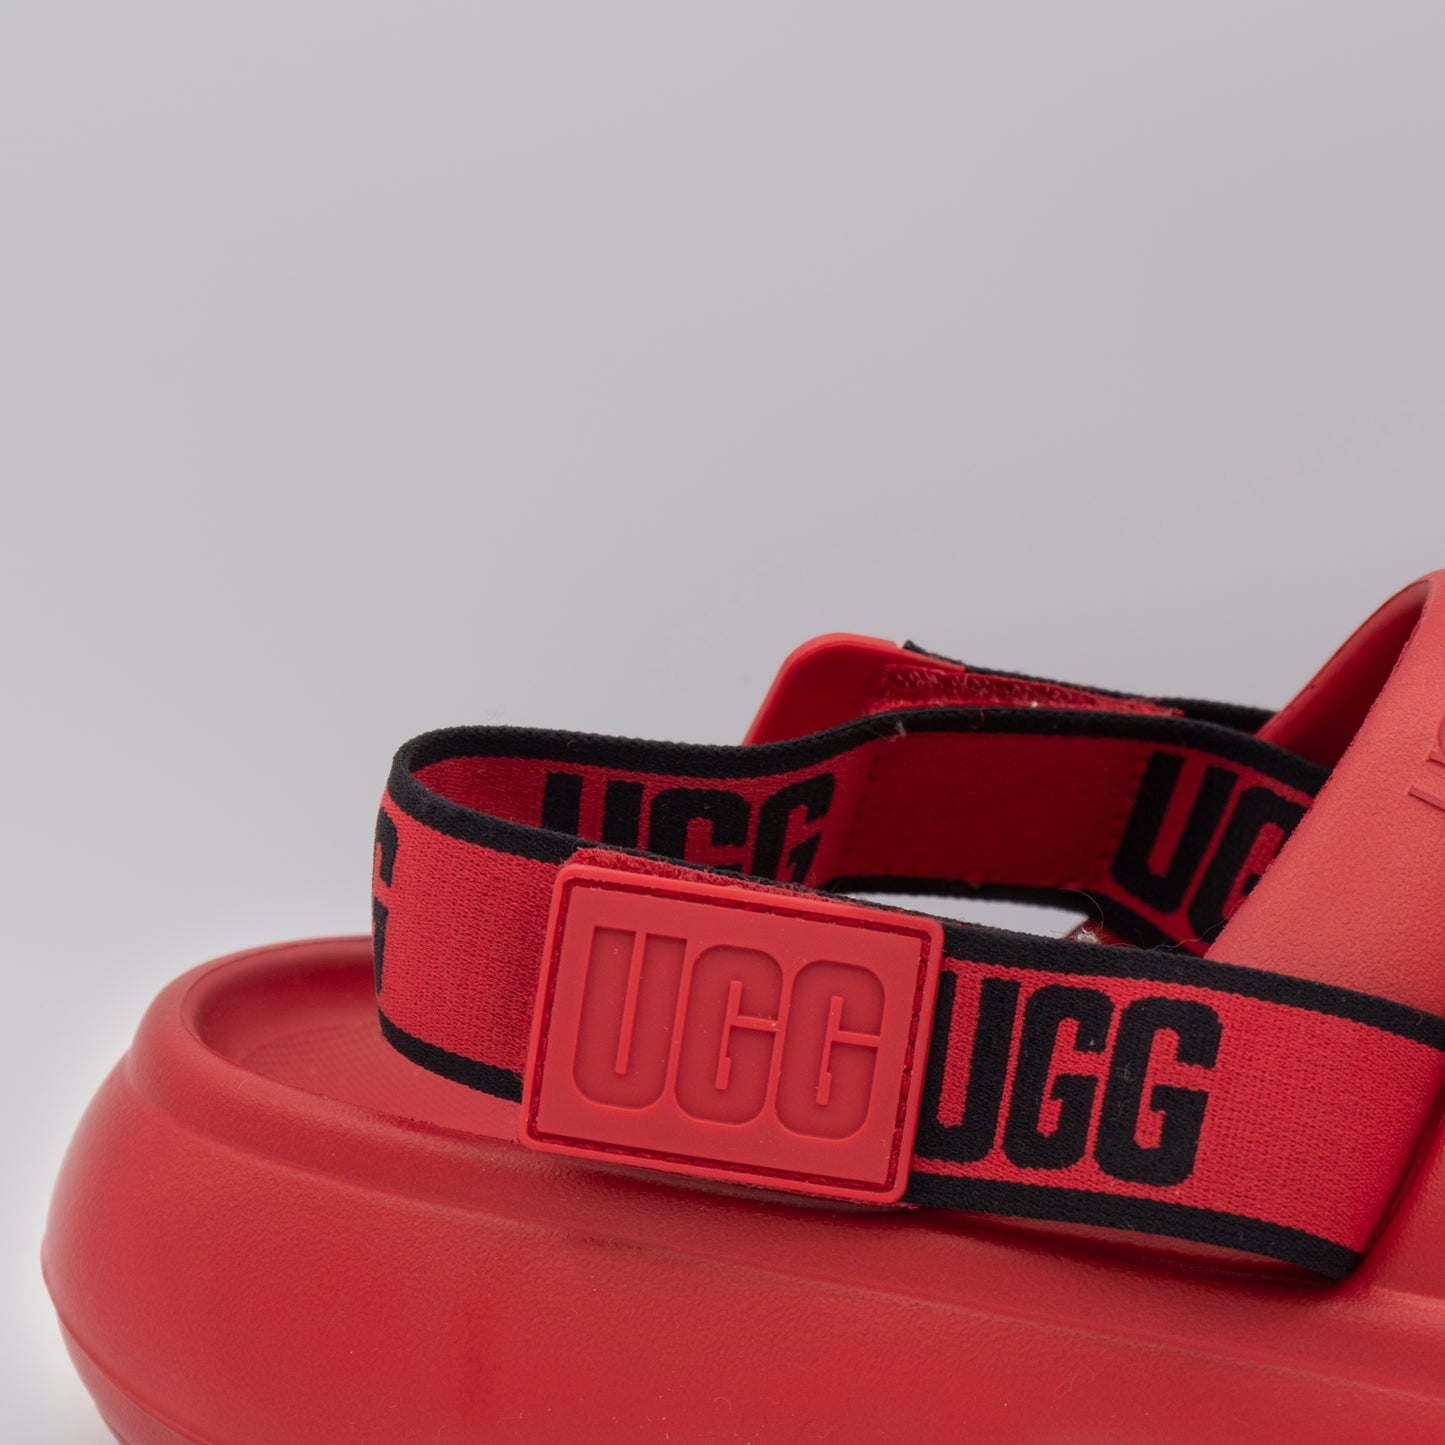 UGG - Men's Sport Yeah Slide - Samba Red